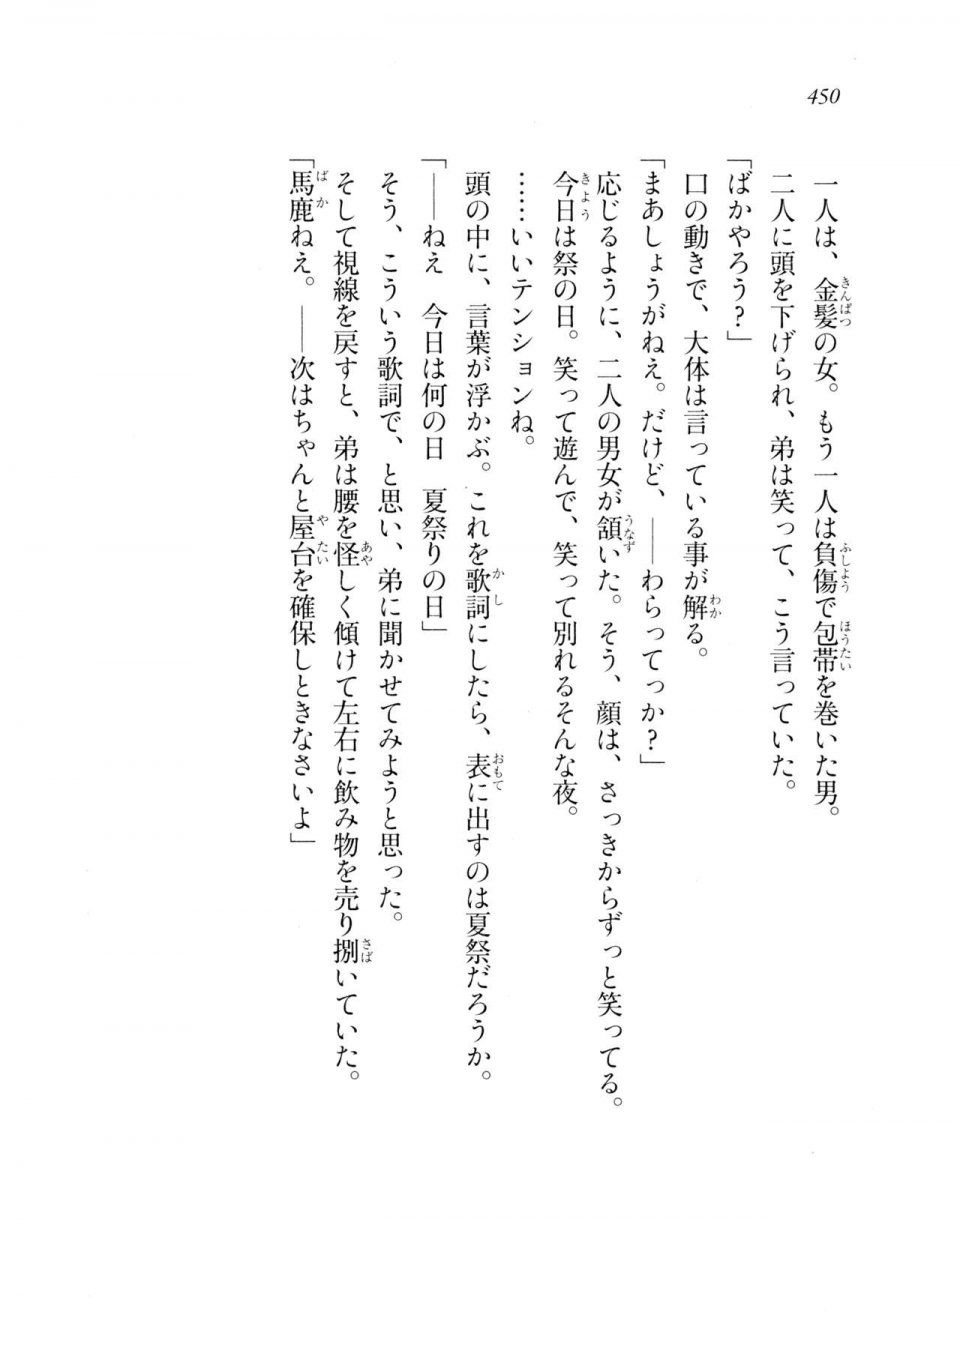 Kyoukai Senjou no Horizon LN Sidestory Vol 2 - Photo #448